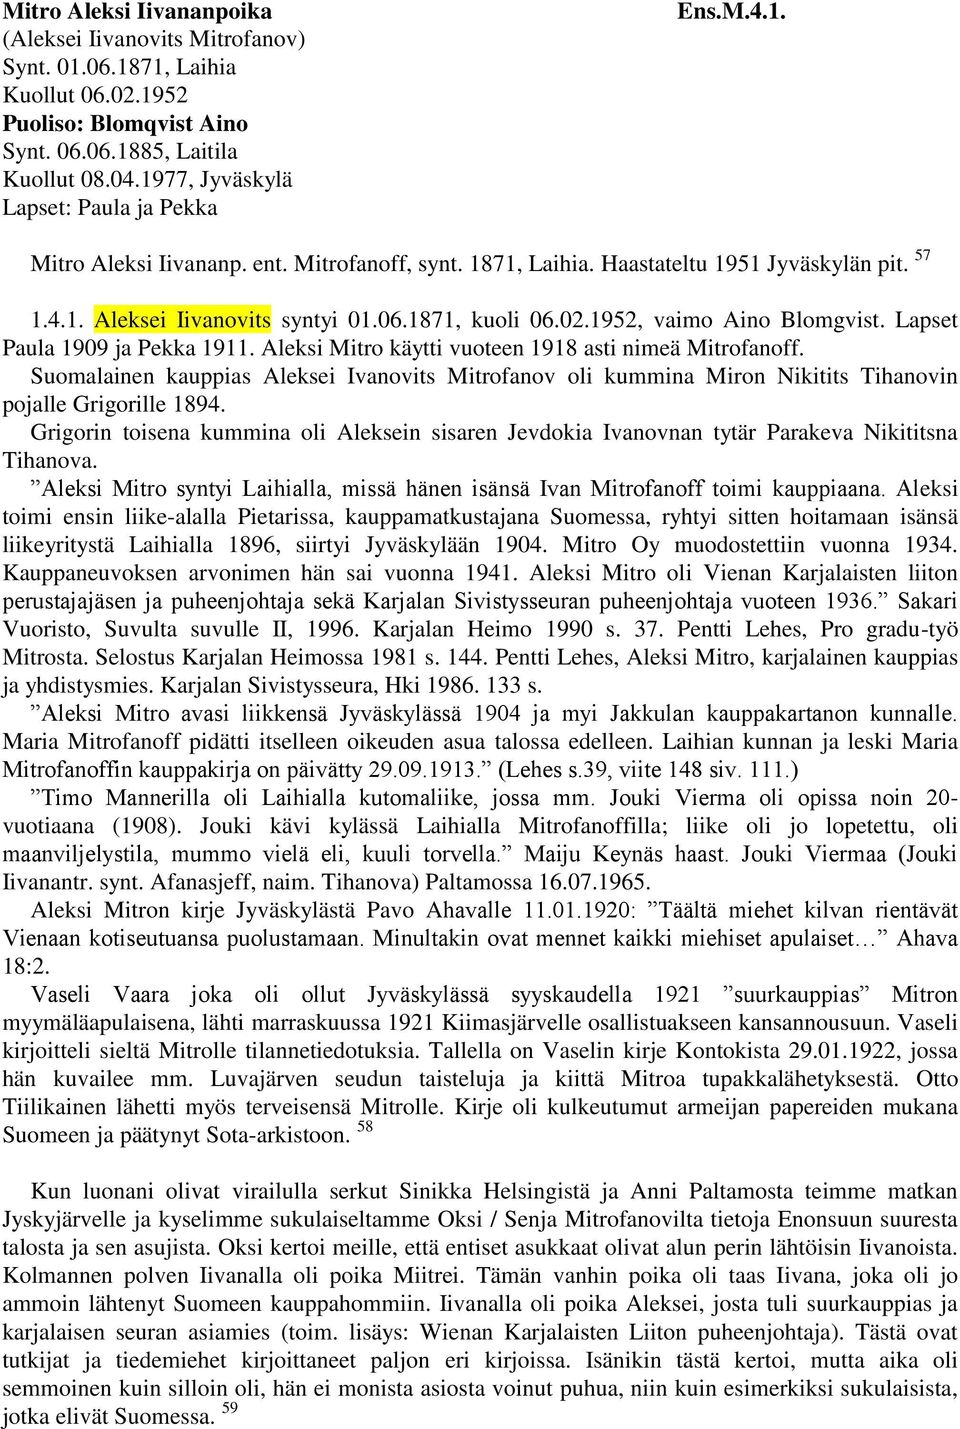 1871, kuoli 06.02.1952, vaimo Aino Blomgvist. Lapset Paula 1909 ja Pekka 1911. Aleksi Mitro käytti vuoteen 1918 asti nimeä Mitrofanoff.